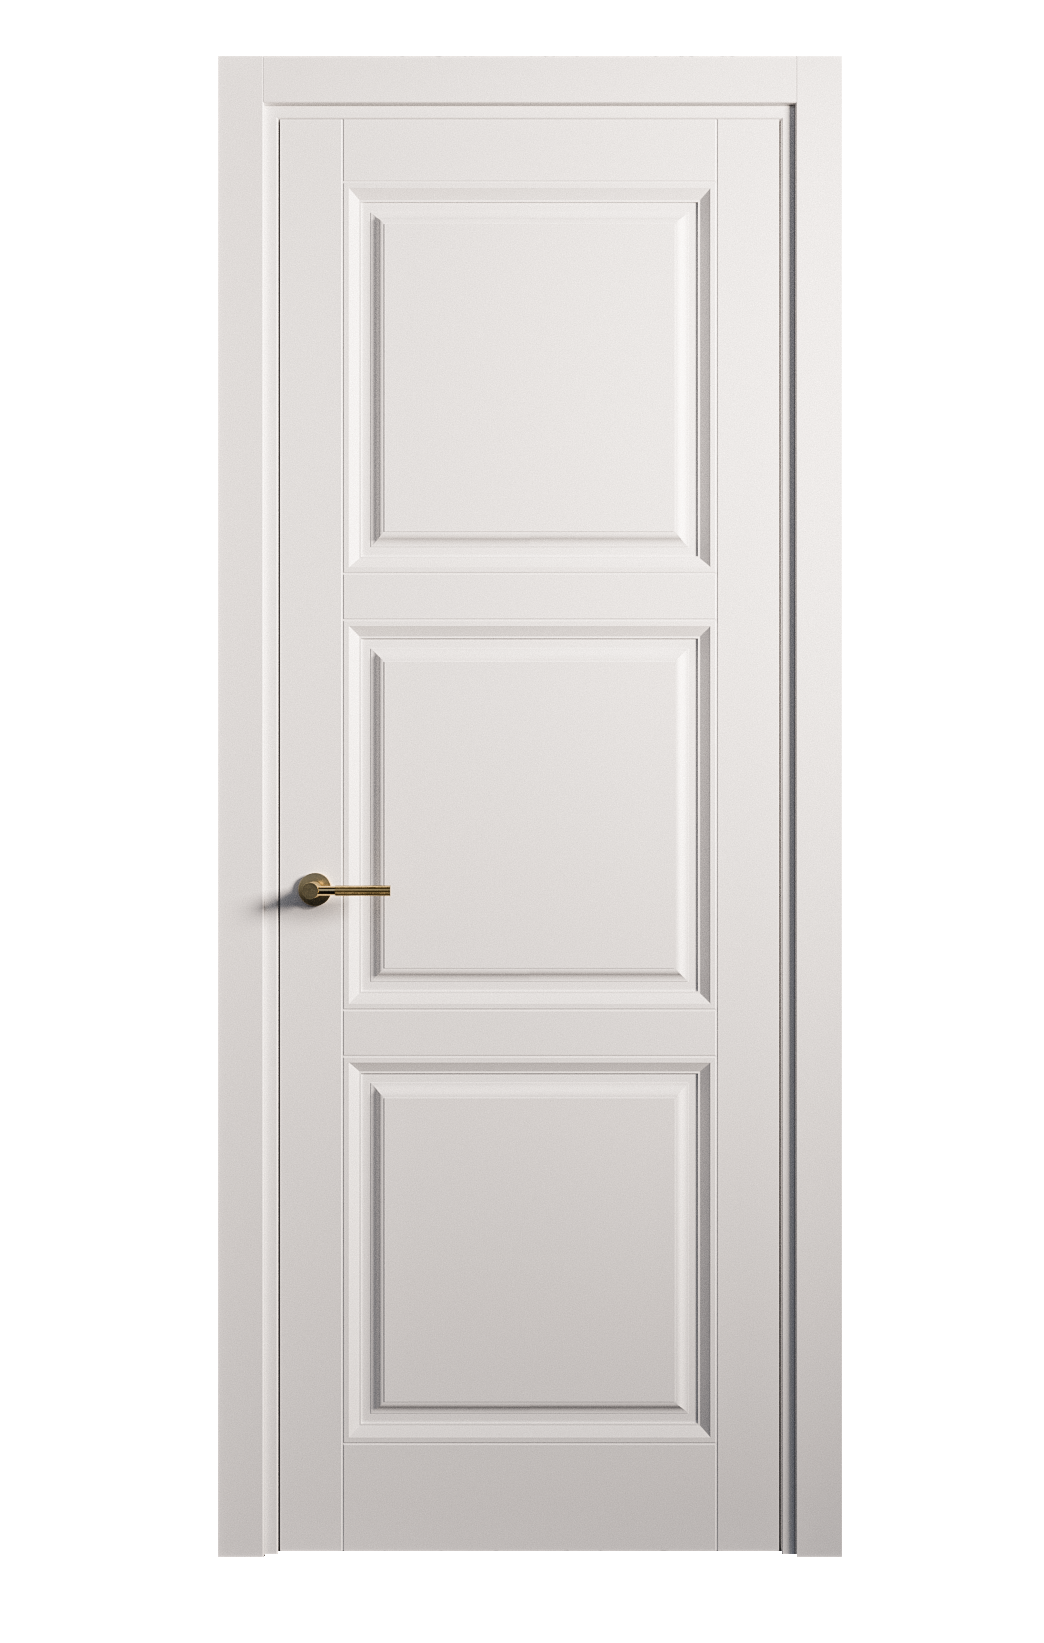 Межкомнатная дверь Venezia-3 глухая эмаль ral 9003 25760